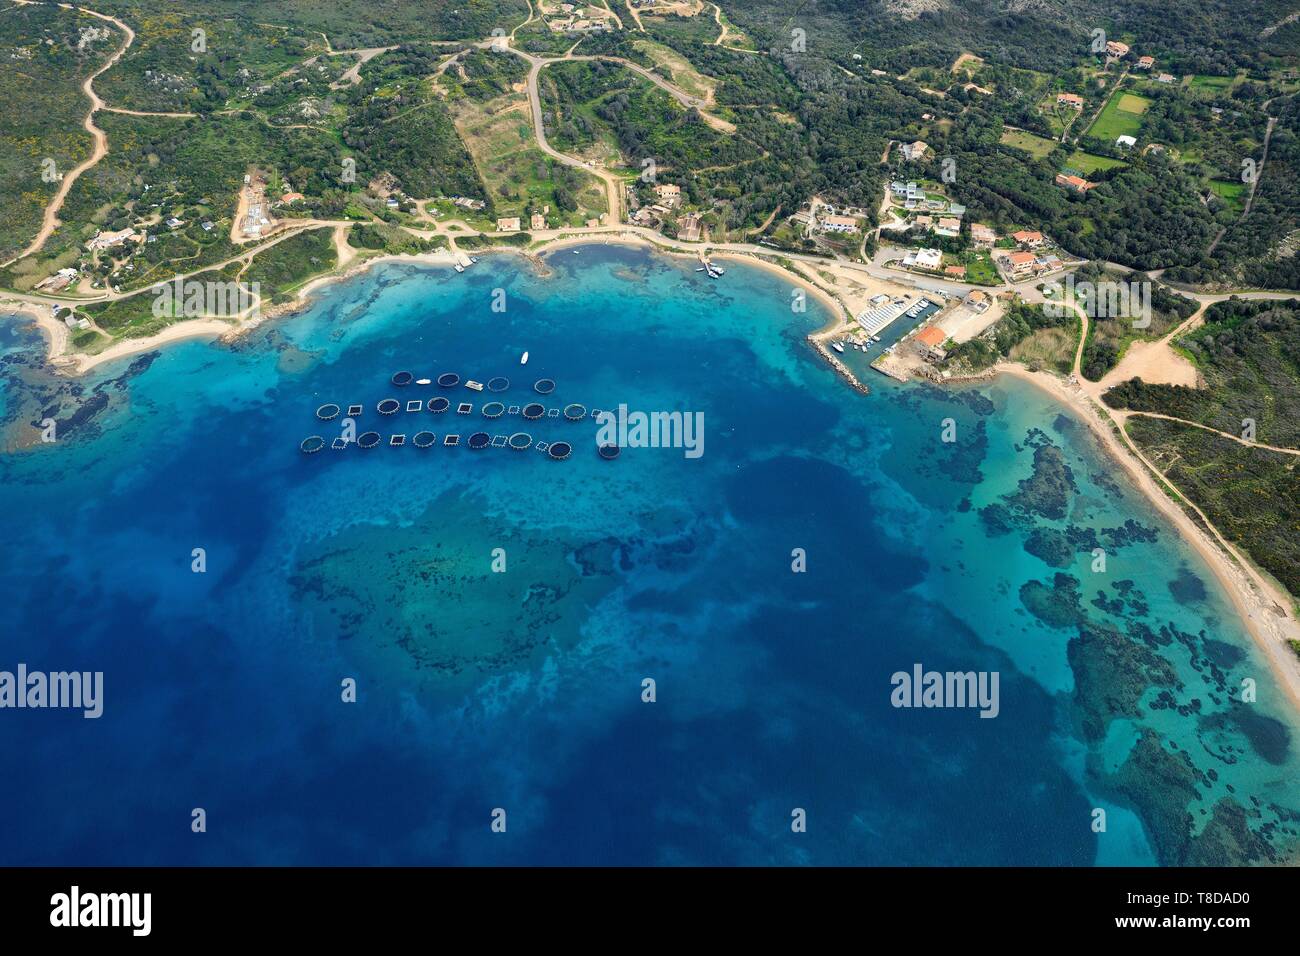 Francia, Corse du Sud, Golfo di Santa Manza, Bonifacio (vista aerea Foto  stock - Alamy